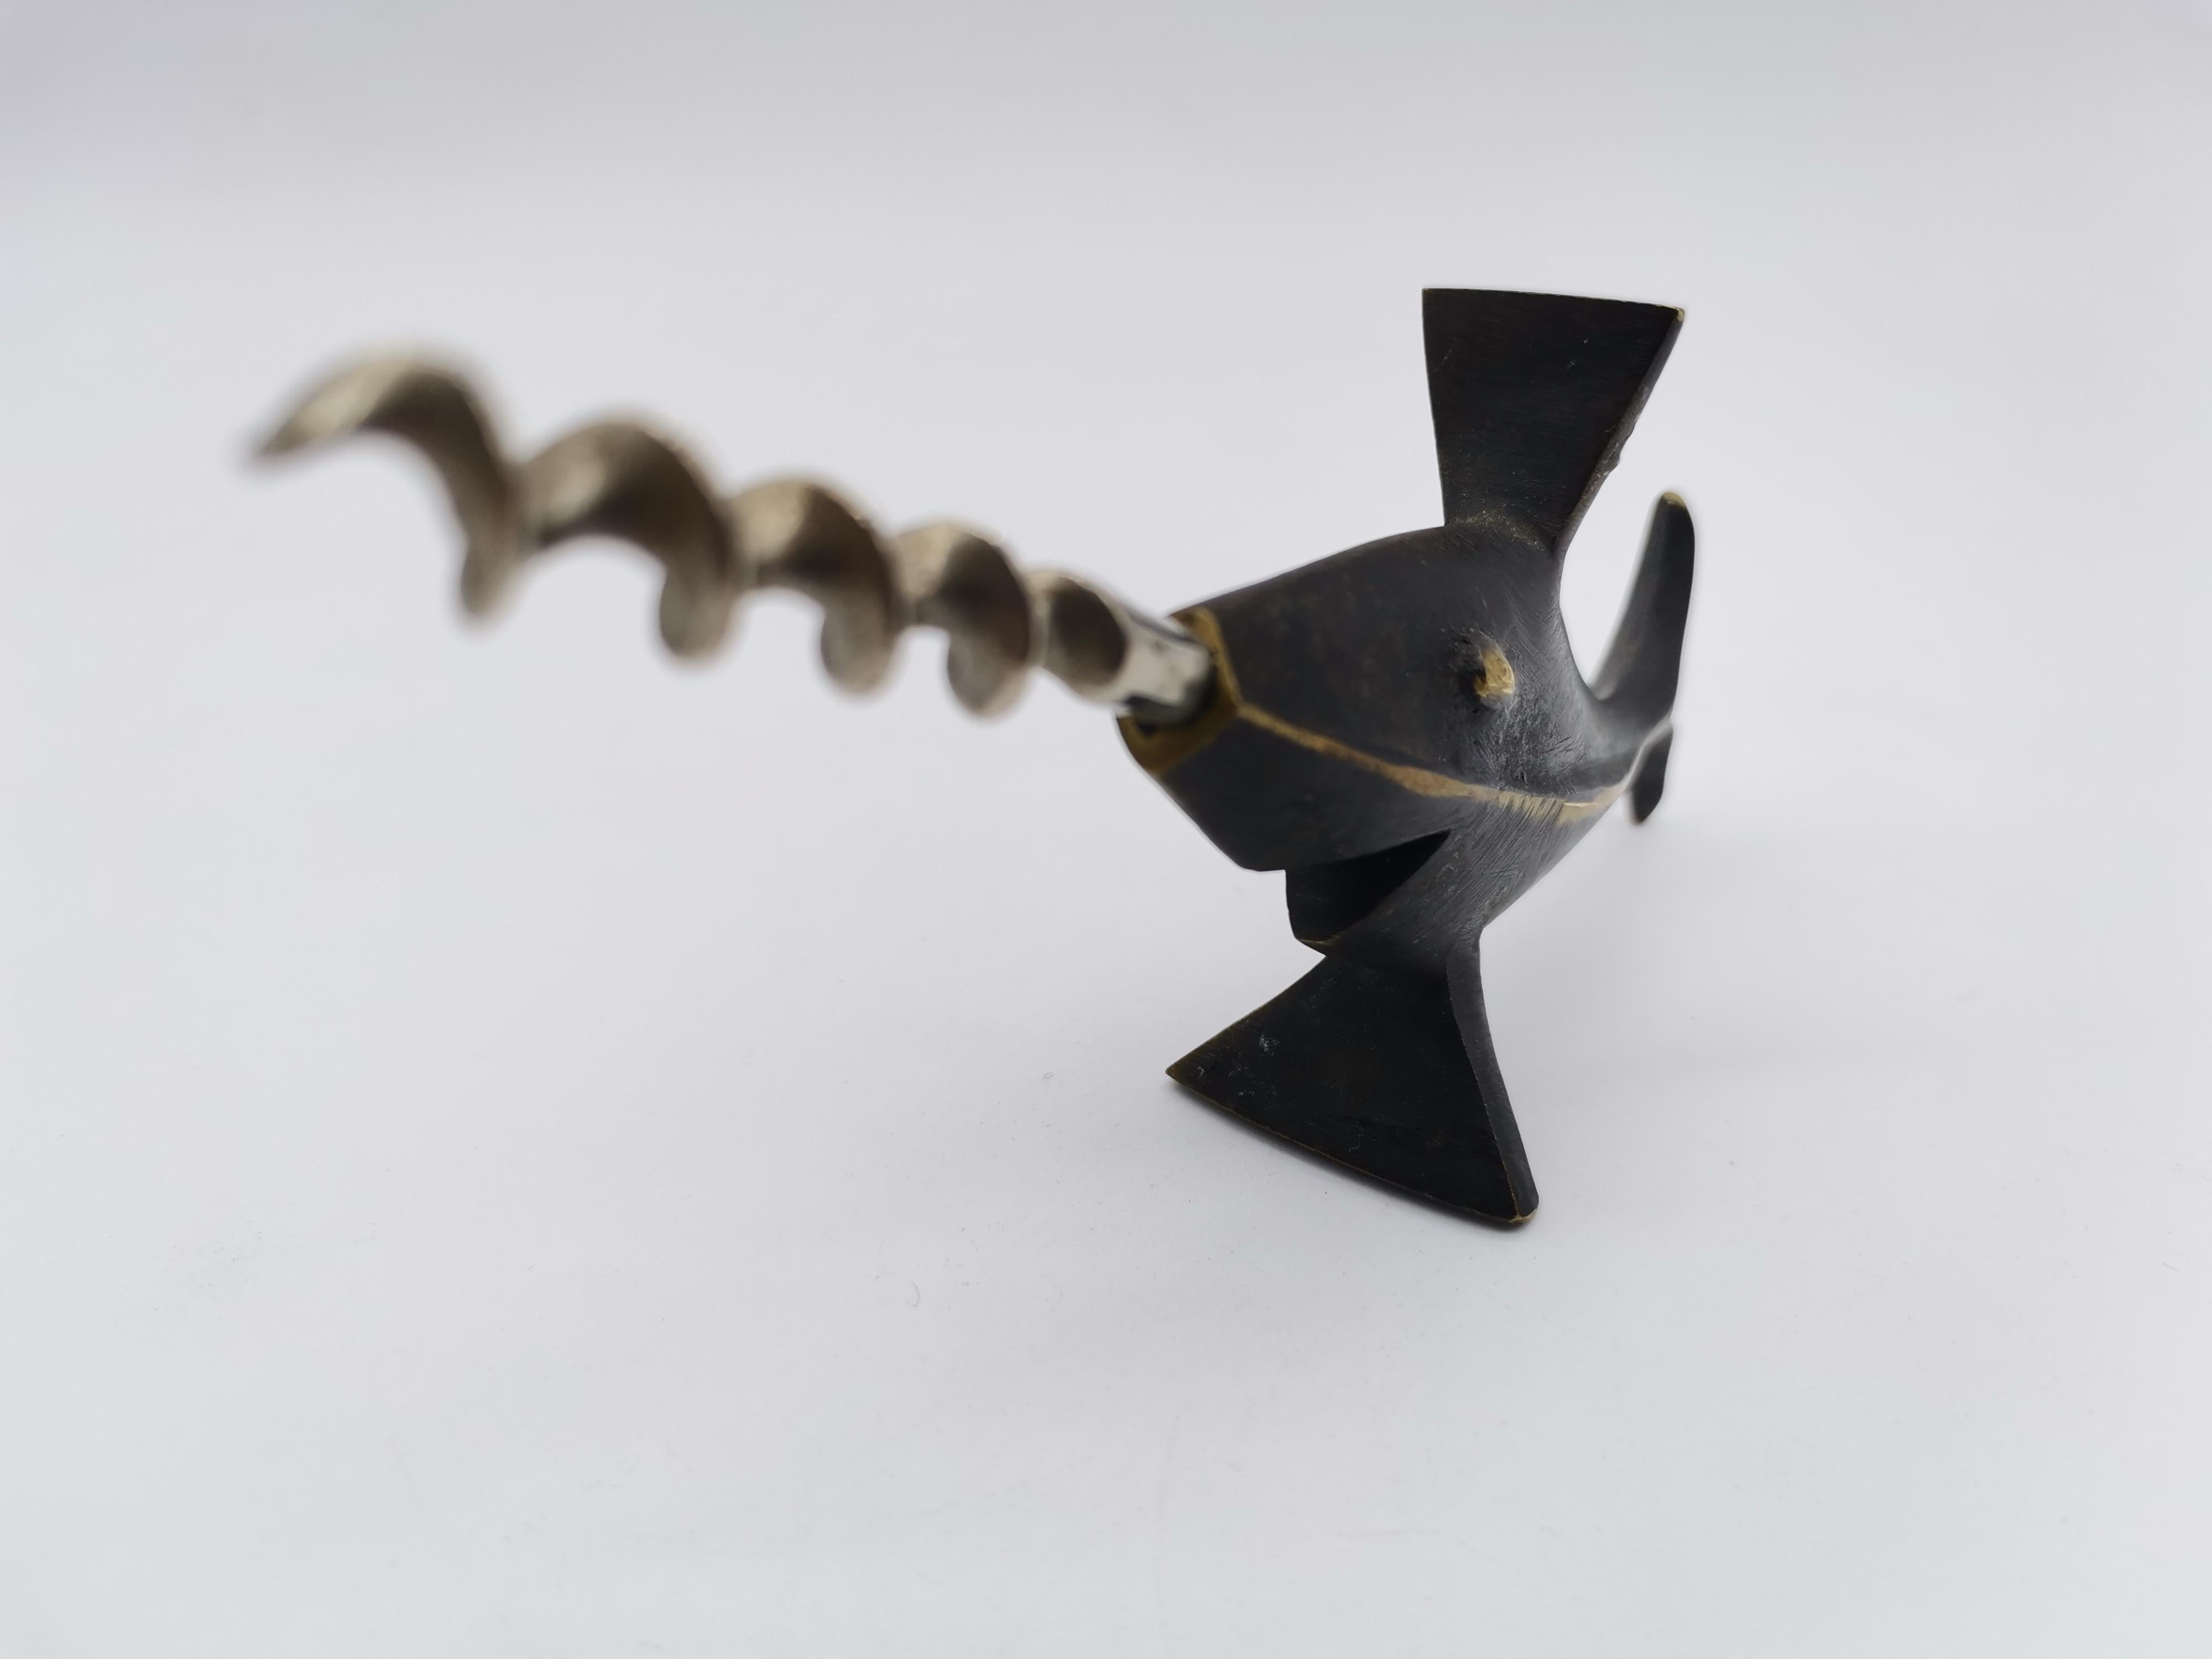 A cork screw in shape of a sword fish by Hertha Baller/Walter Bosse.